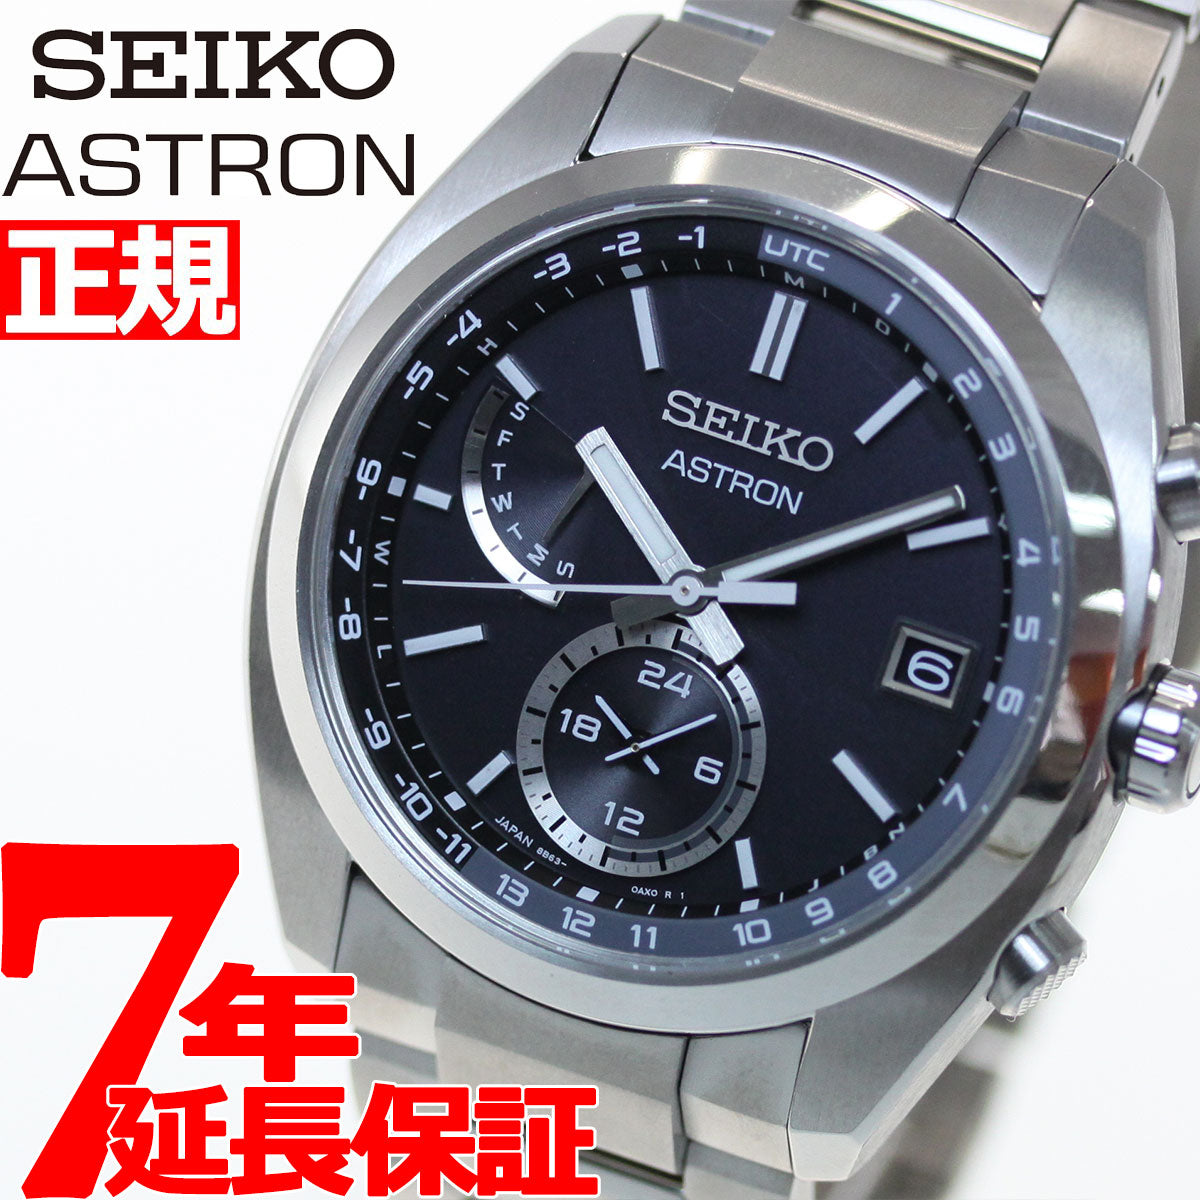 超人気モデル セイコー アストロン SBXY035 - 腕時計(アナログ)